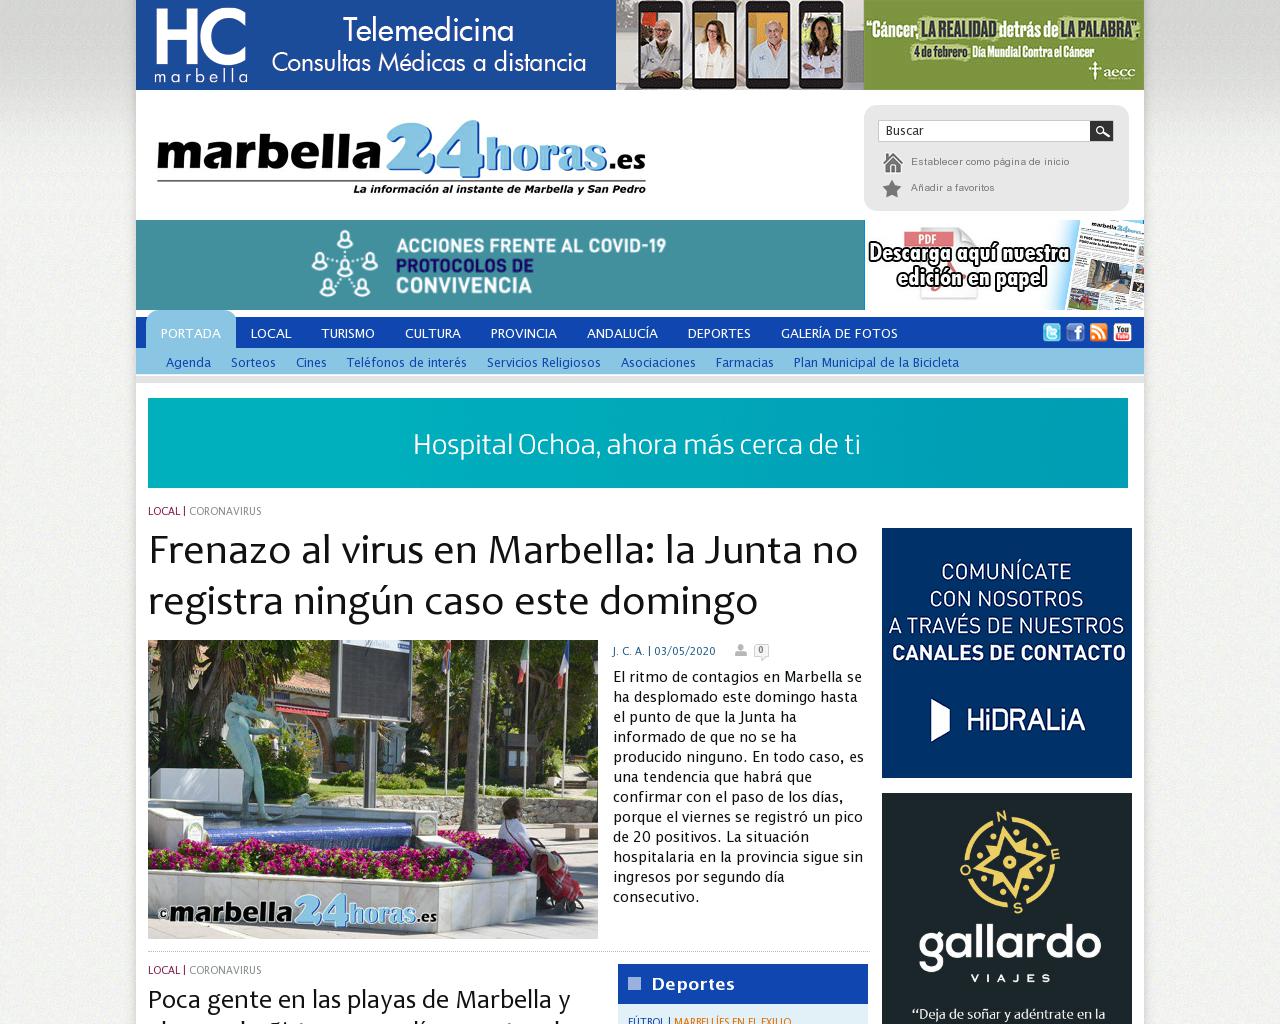 marbella24horas.es